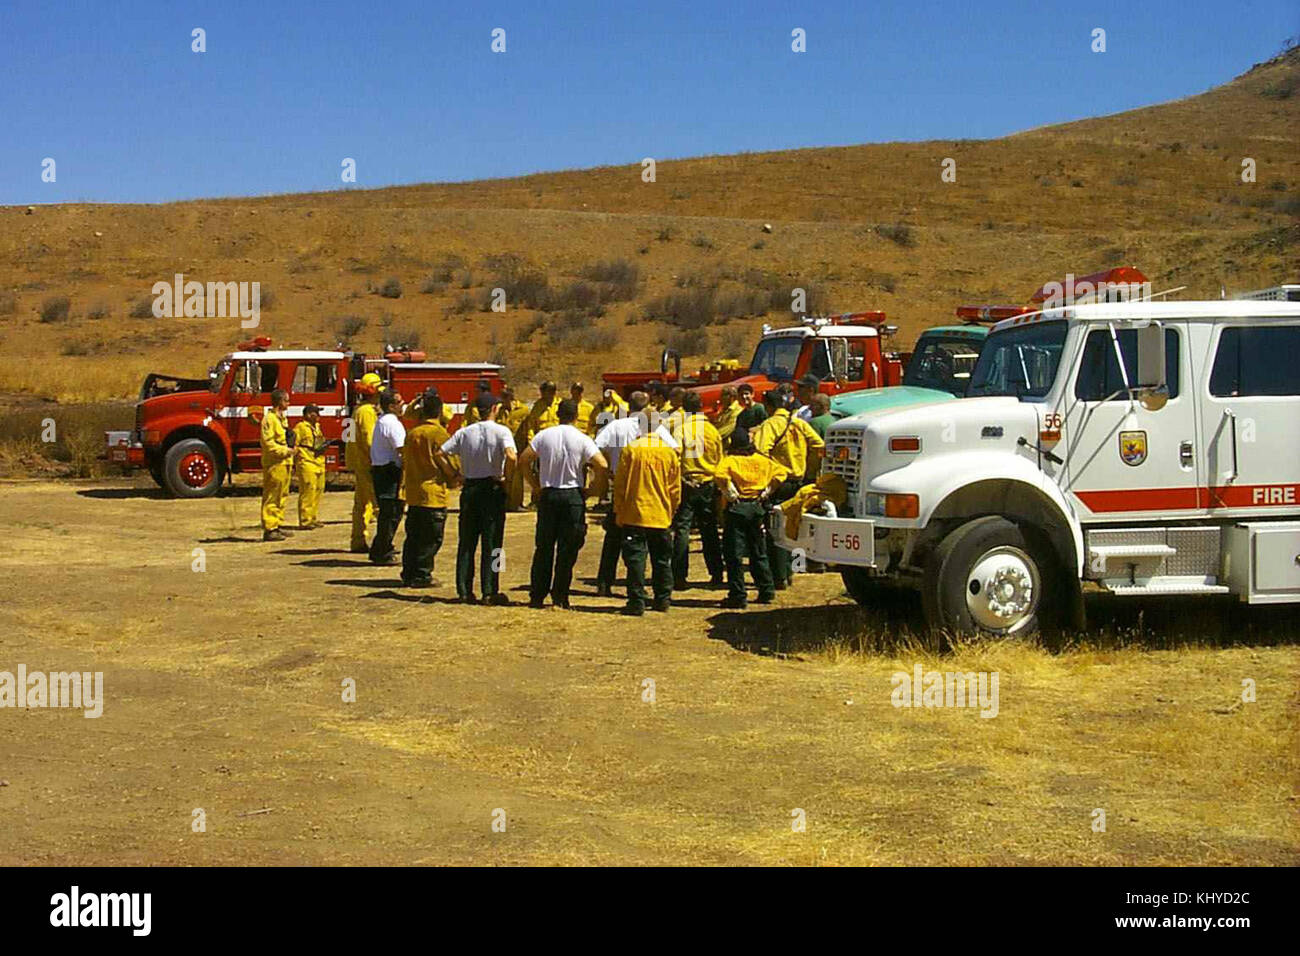 Camion pompiers avec leurs véhicules et équipements flexibles pour la lutte contre le feu Banque D'Images